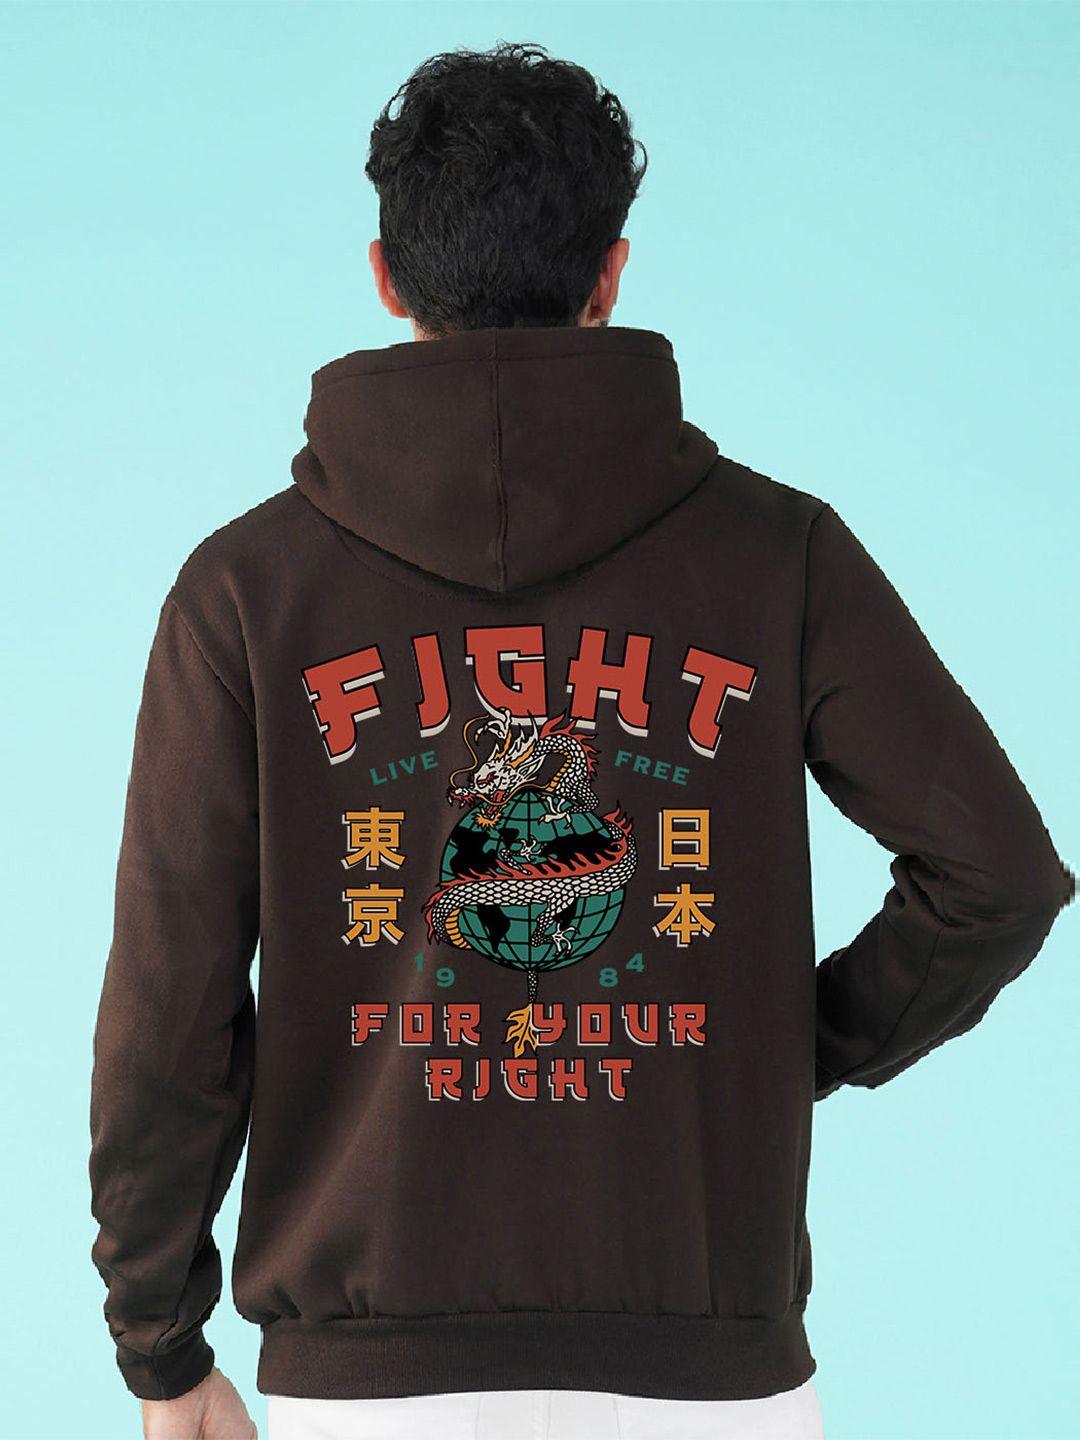 nusyl-typography-printed-hooded-fleece-sweatshirt